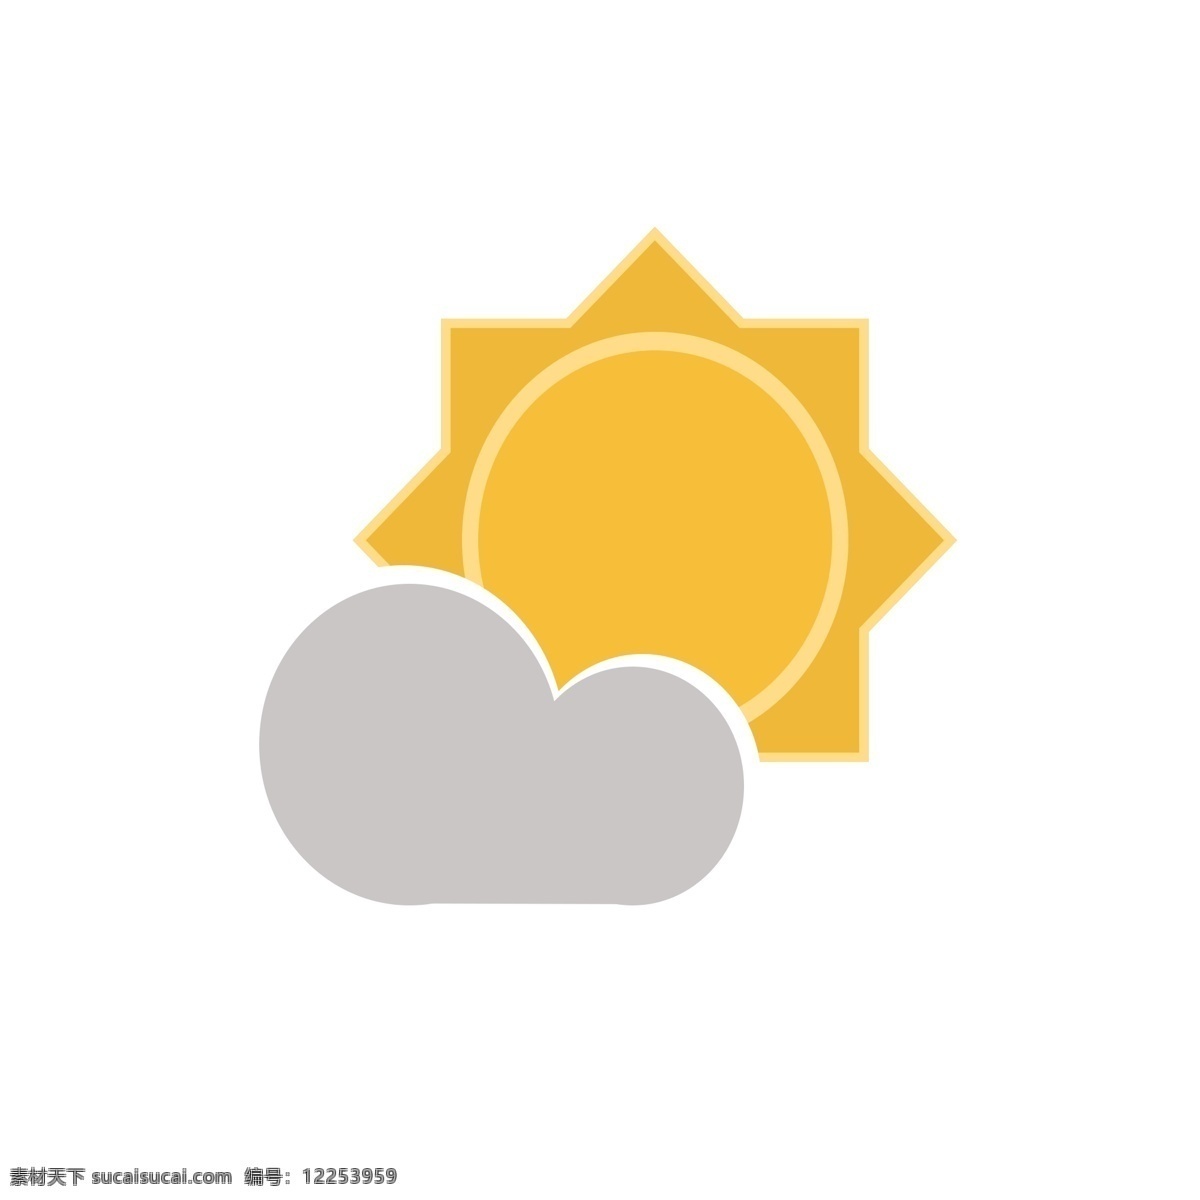 晴天 天气 图标 矢量图案 卡通有趣 扁平化 明亮太阳 云朵